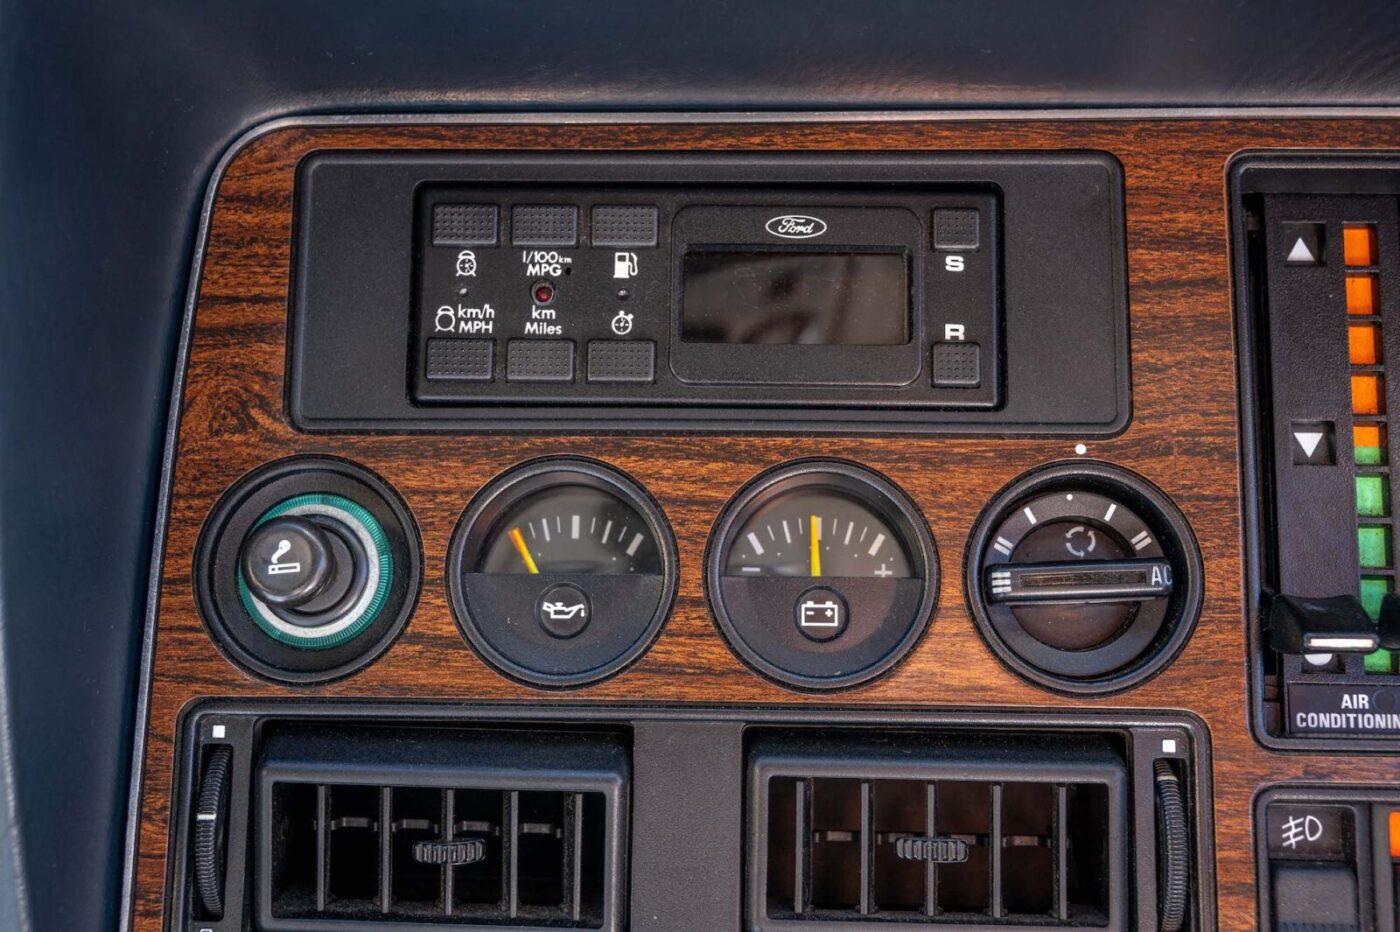 Ford Granada 1984 dashboard